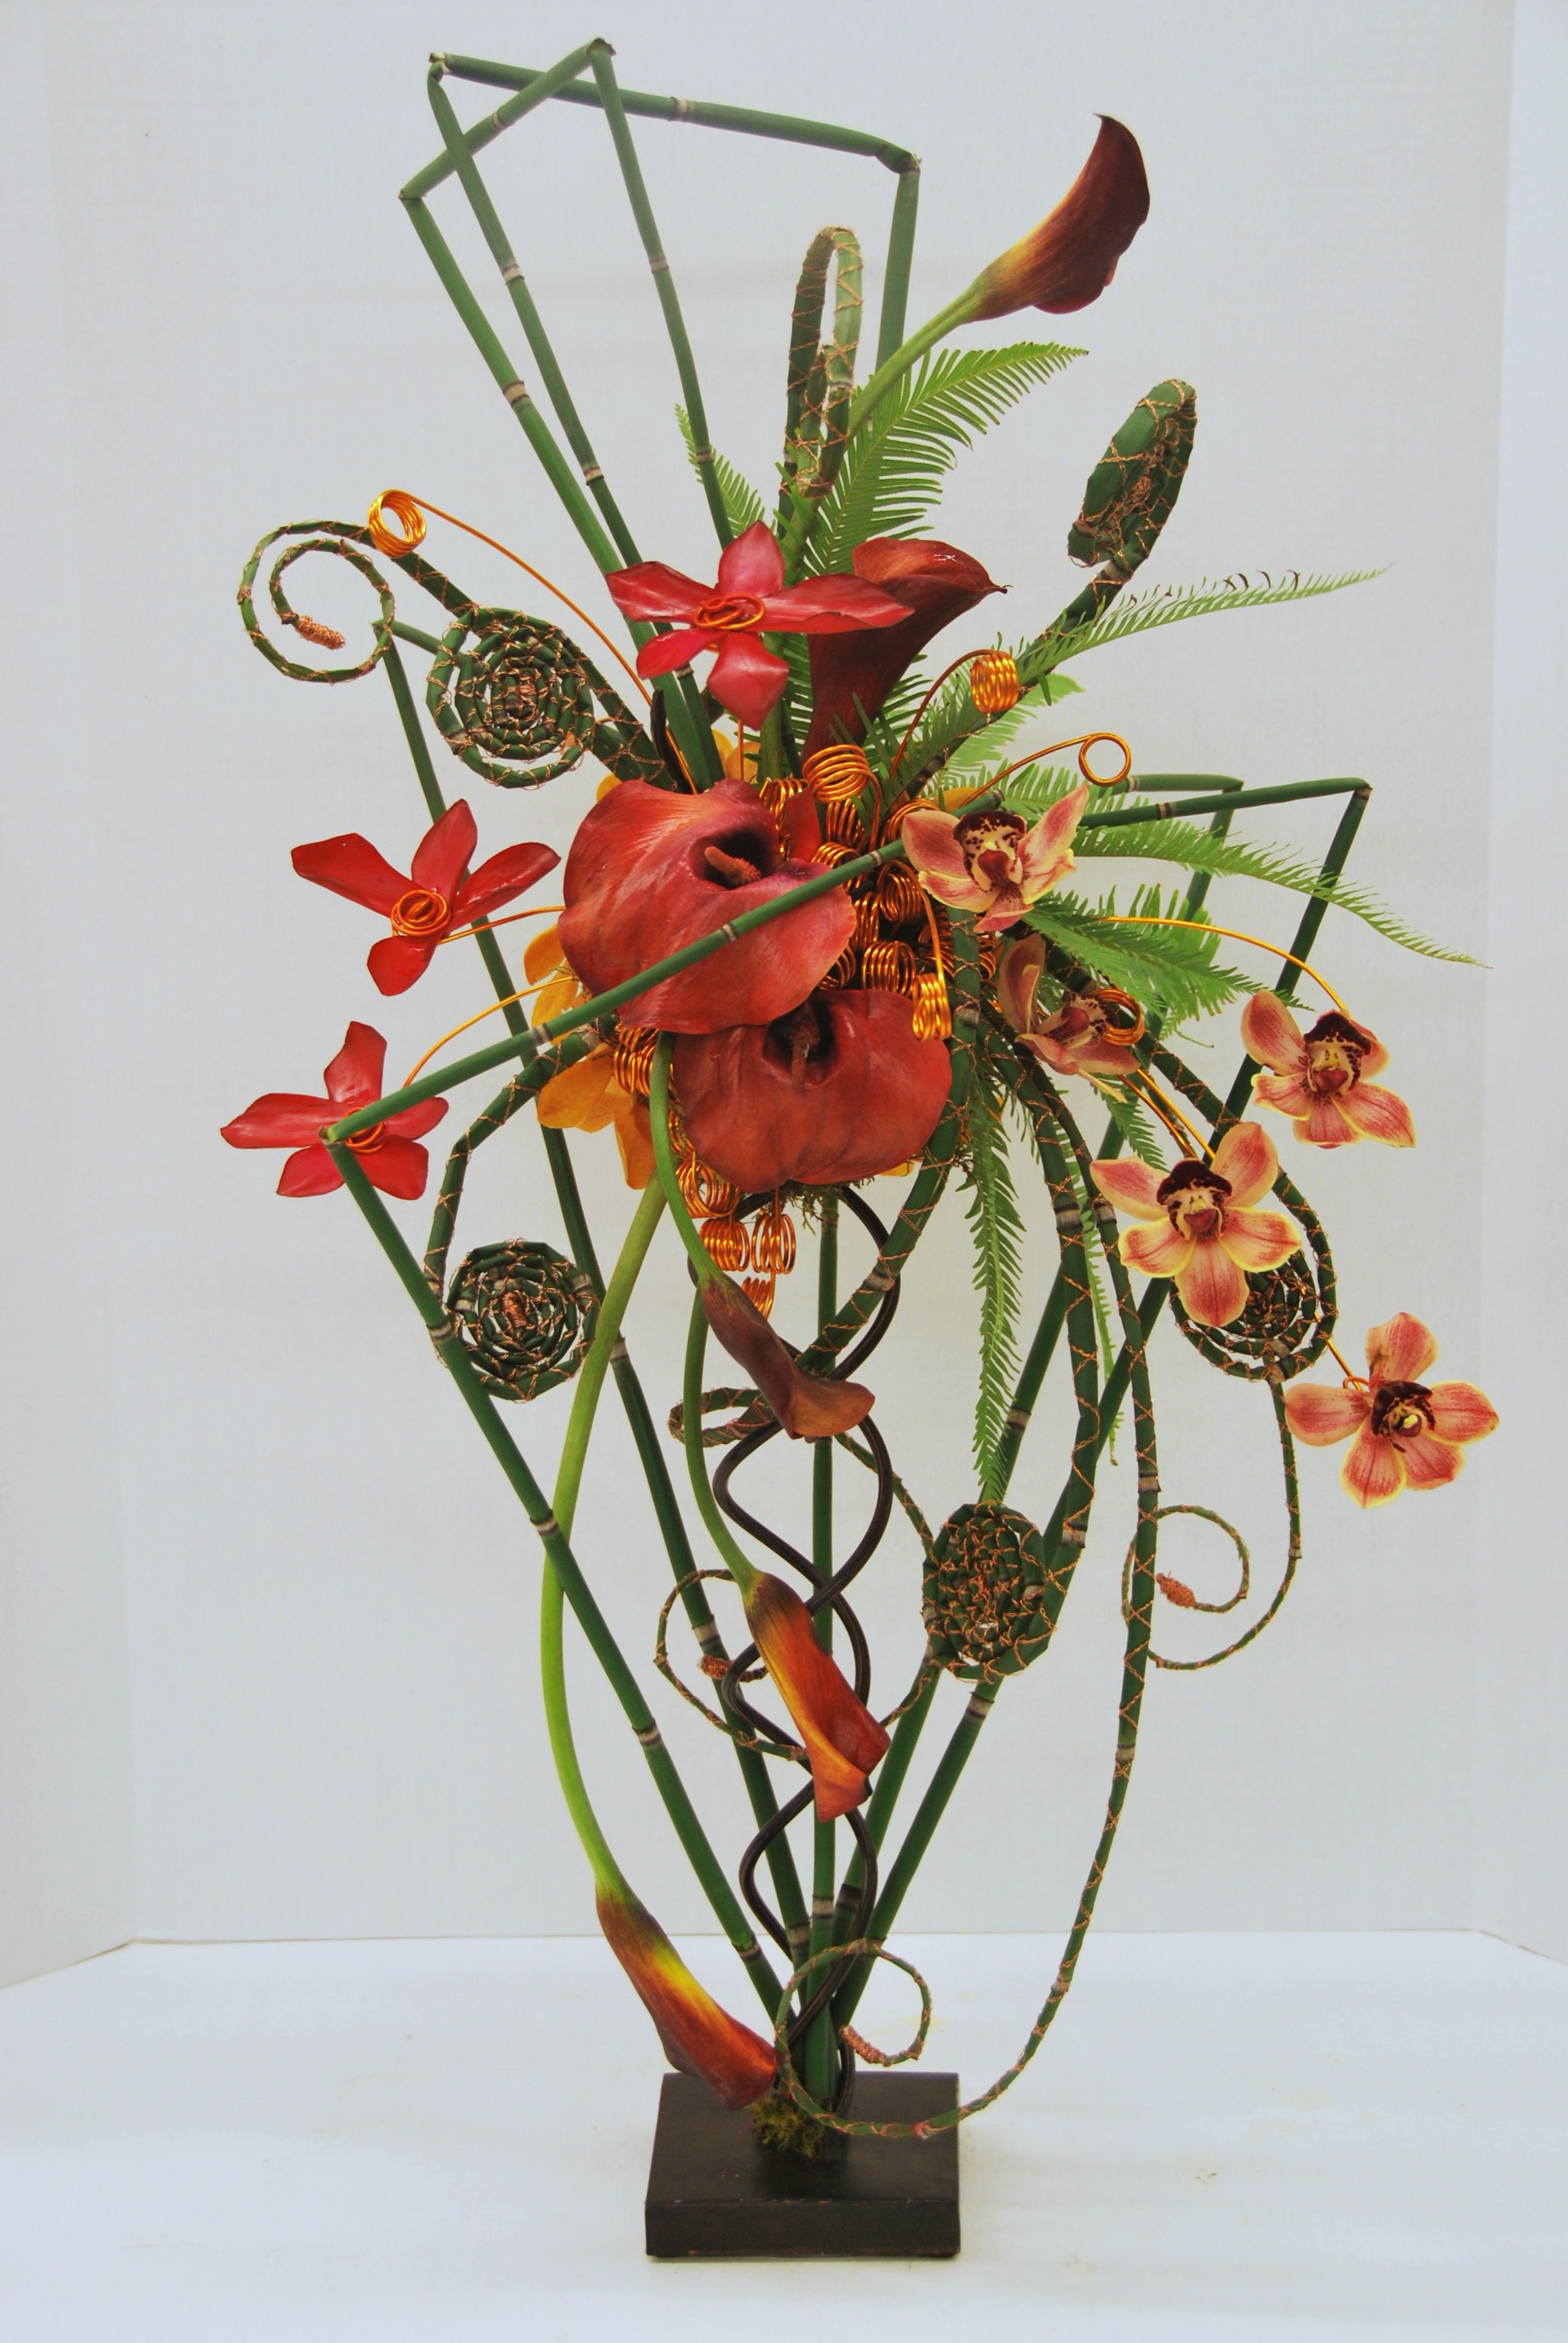 Abstract flower arrangement